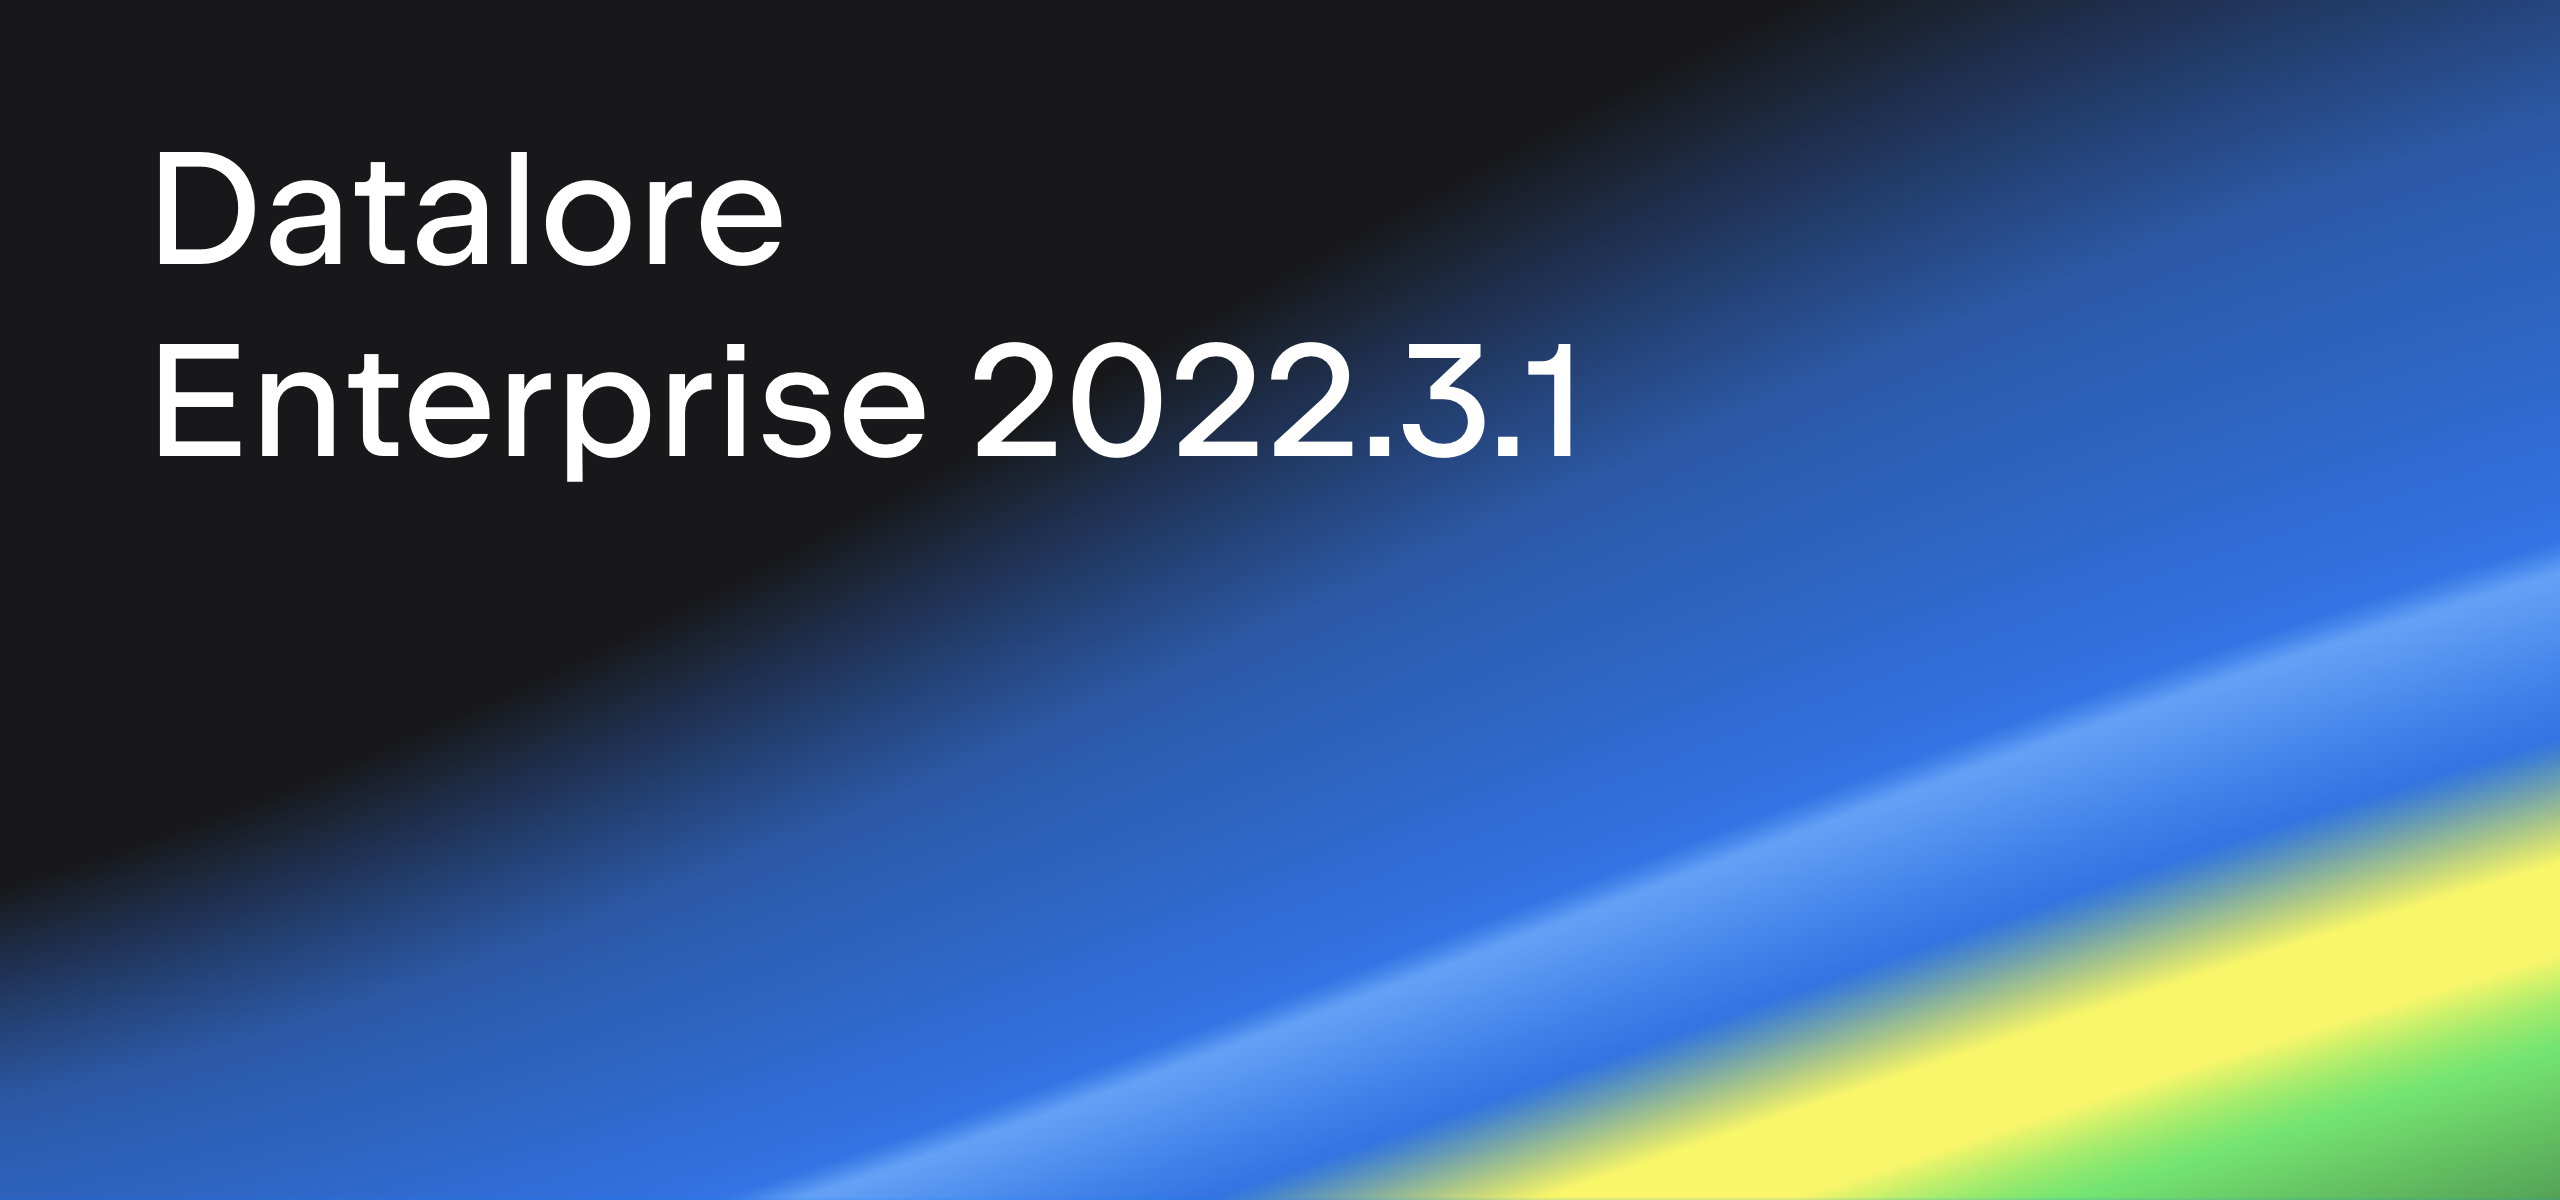 Datalore Enterprise 2022.3.1